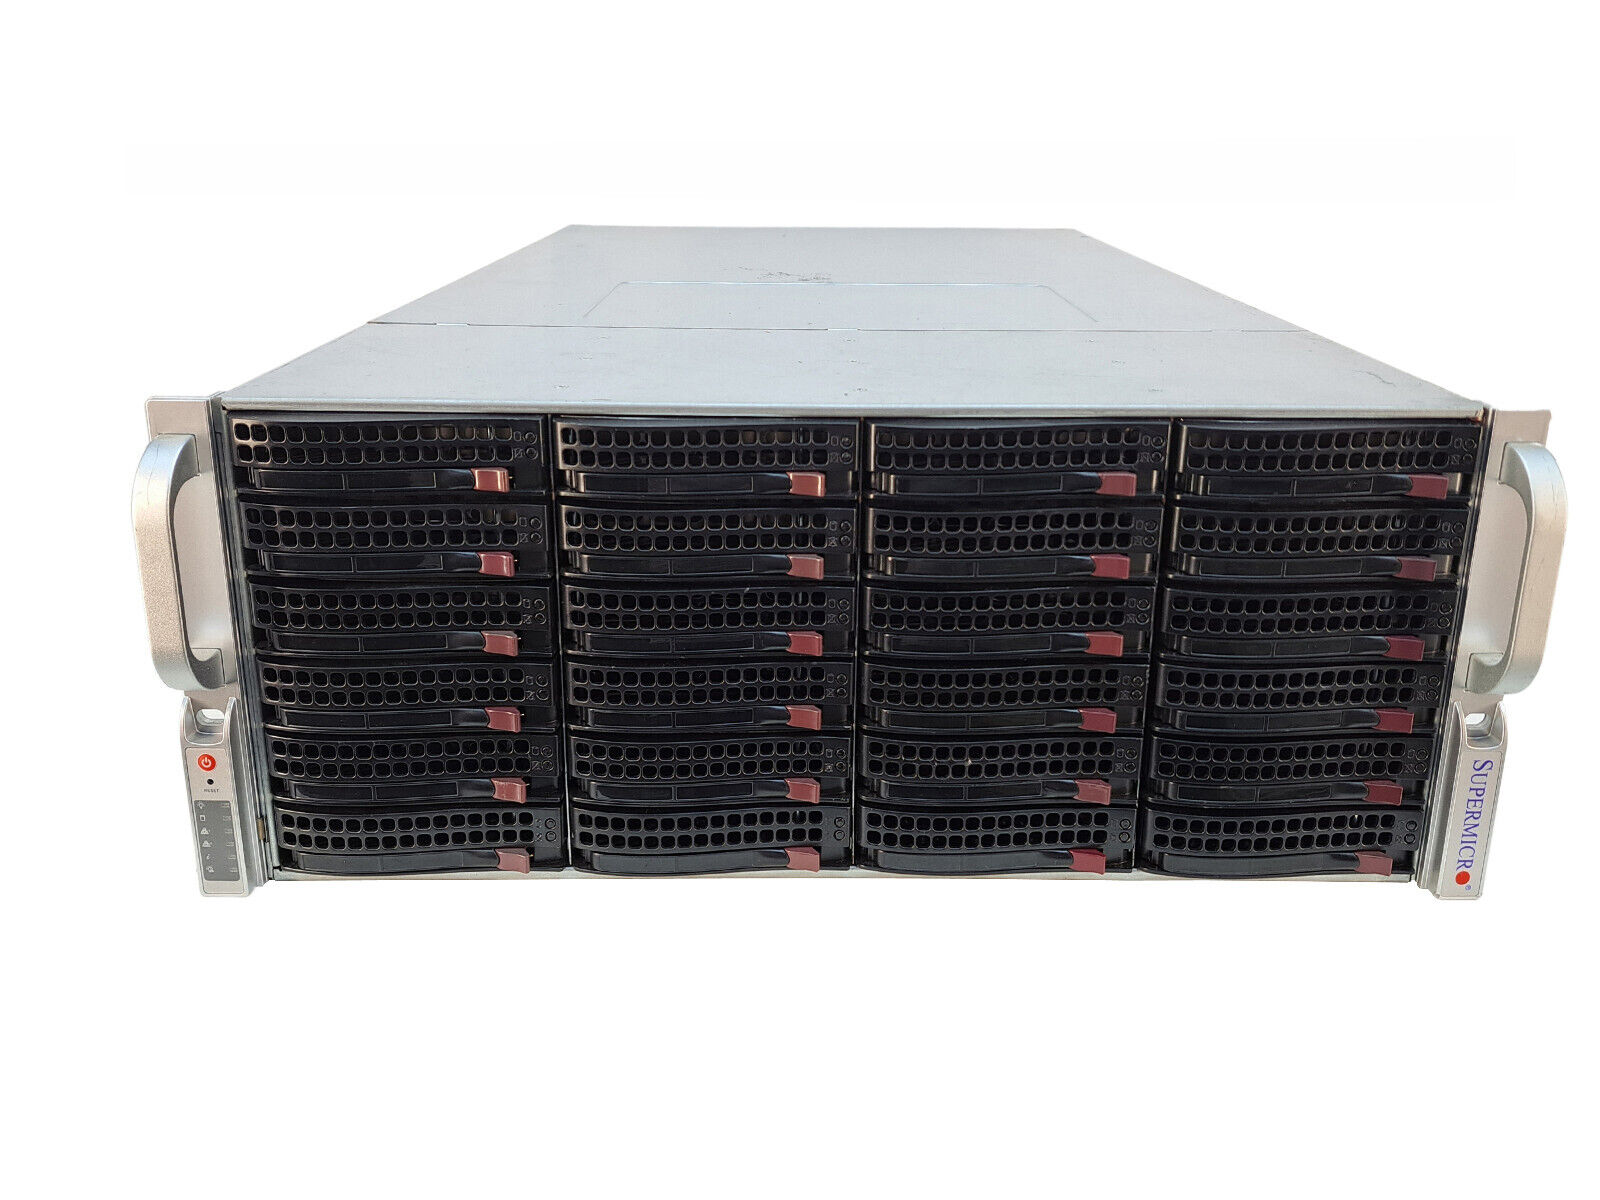 Supermicro 847BE1C-R1K28LPB 4U 36-Bay Server Chassis 12Gbs SAS3-846EL1 w/ Rails